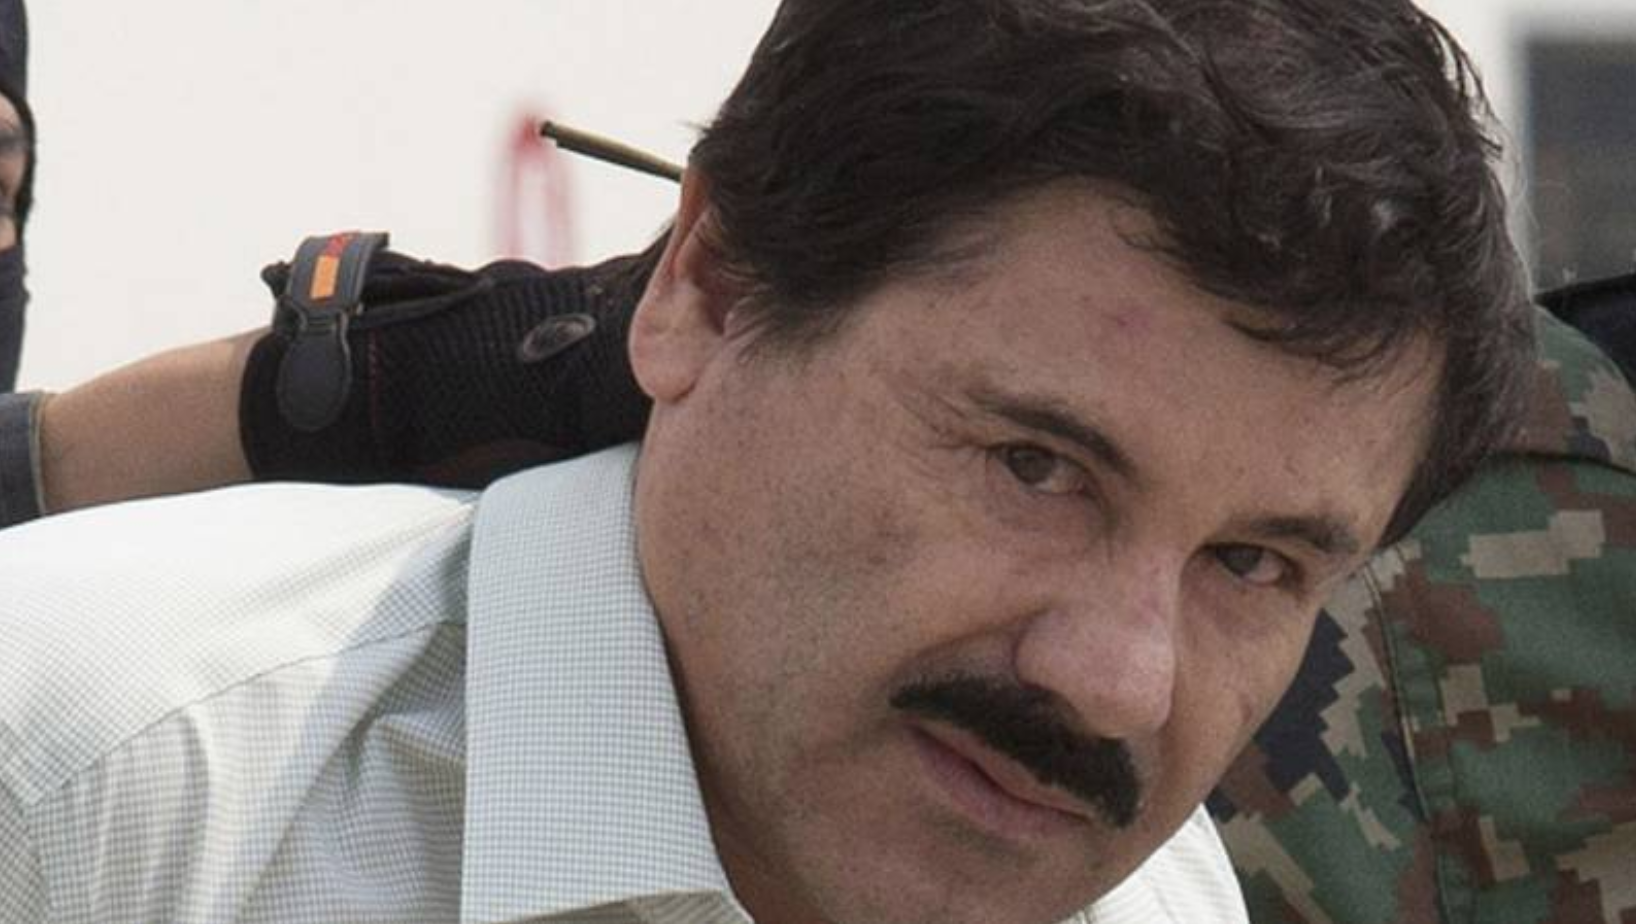 ‘Recibo un trato cruel e injusto’: ‘El Chapo’ Guzmán denuncia malos tratos en prisión